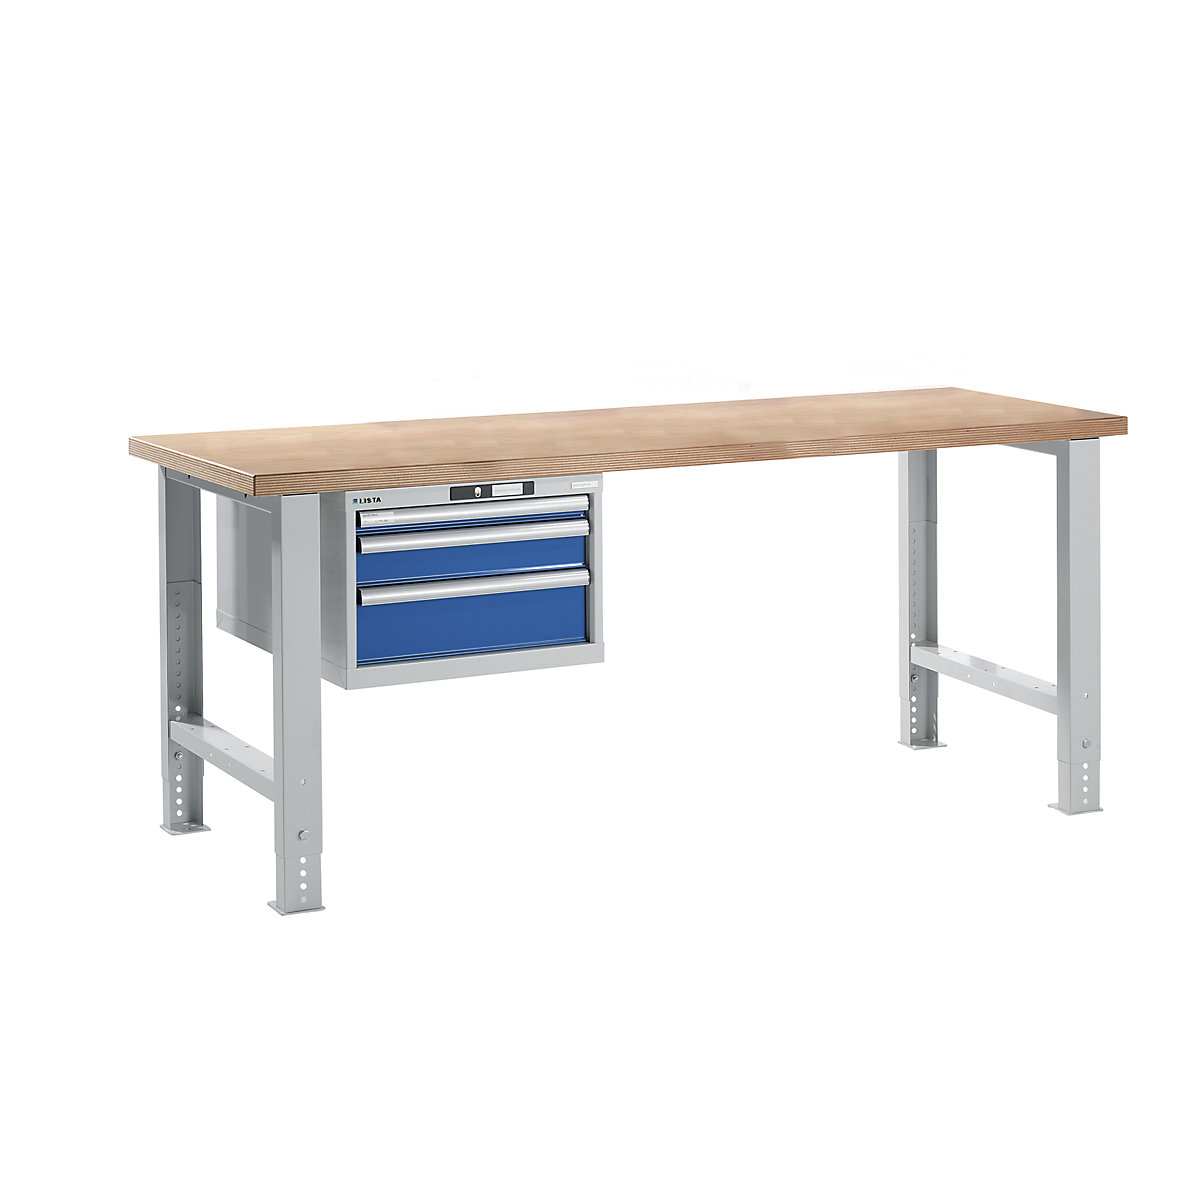 Dielenský stôl v stavebnicovom systéme – LISTA, výška 740 – 1090 mm, závesná skriňa, 3 zásuvky, enciánová modrá, šírka stola 2000 mm-13